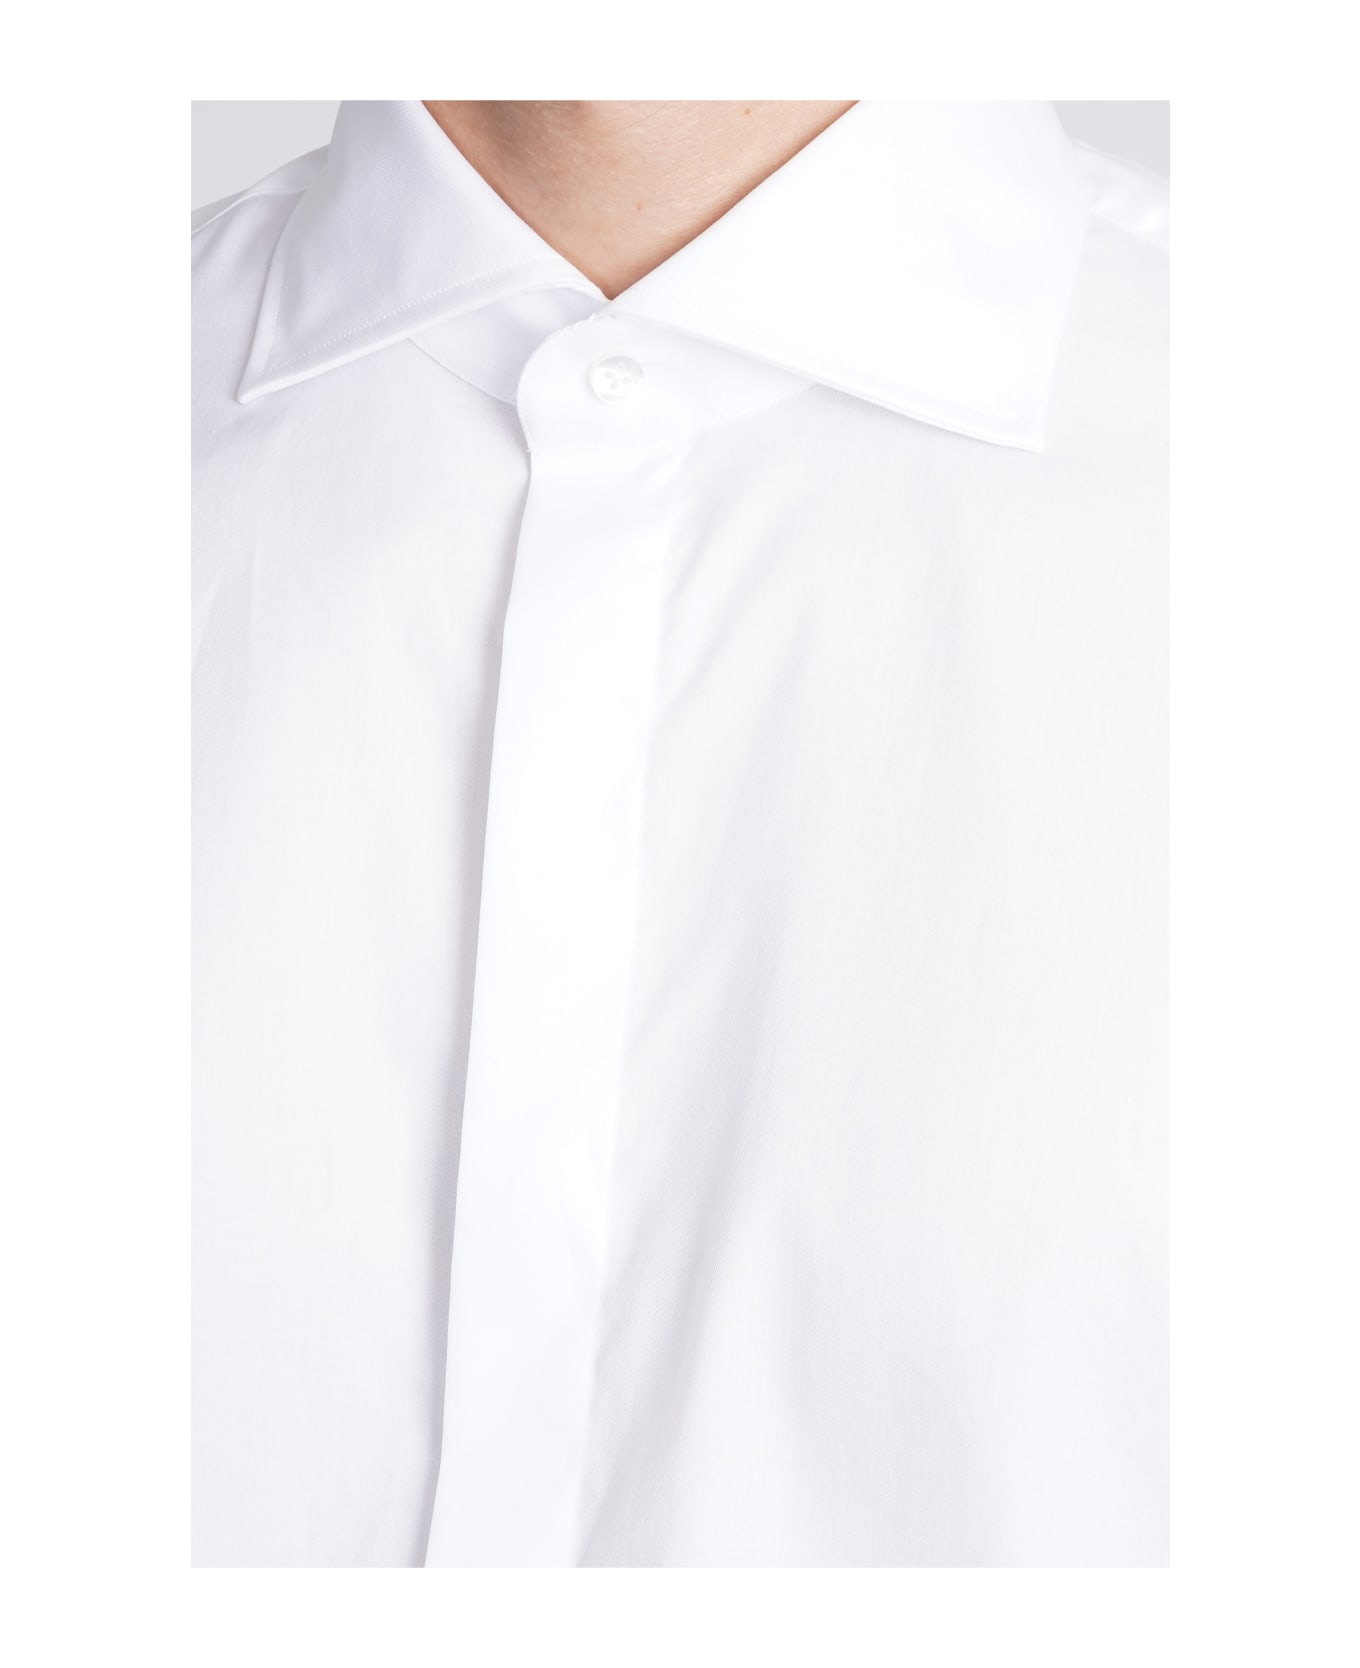 Tagliatore Shirt In White Cotton - white